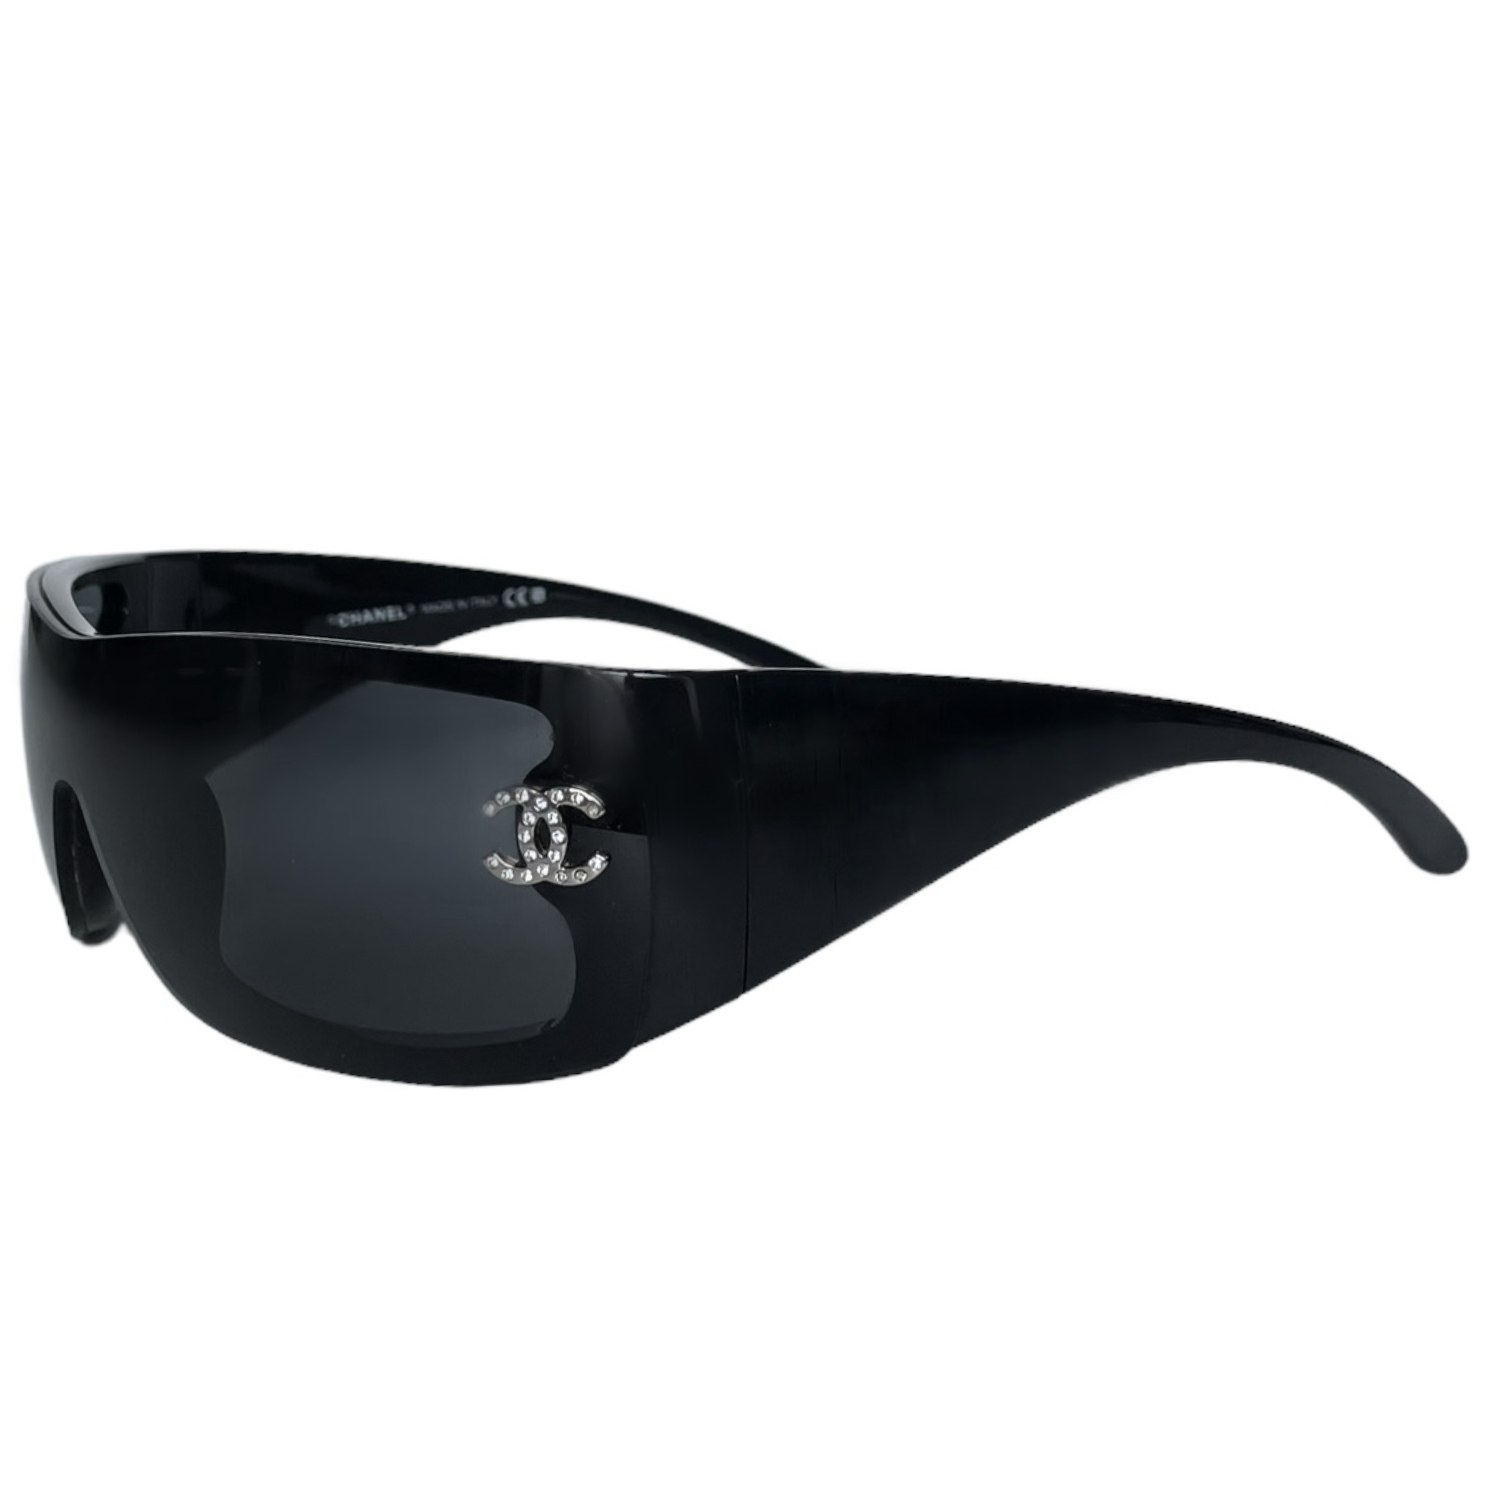 Chanel Silver/Black Monogram 71212 Shield Sunglasses Chanel